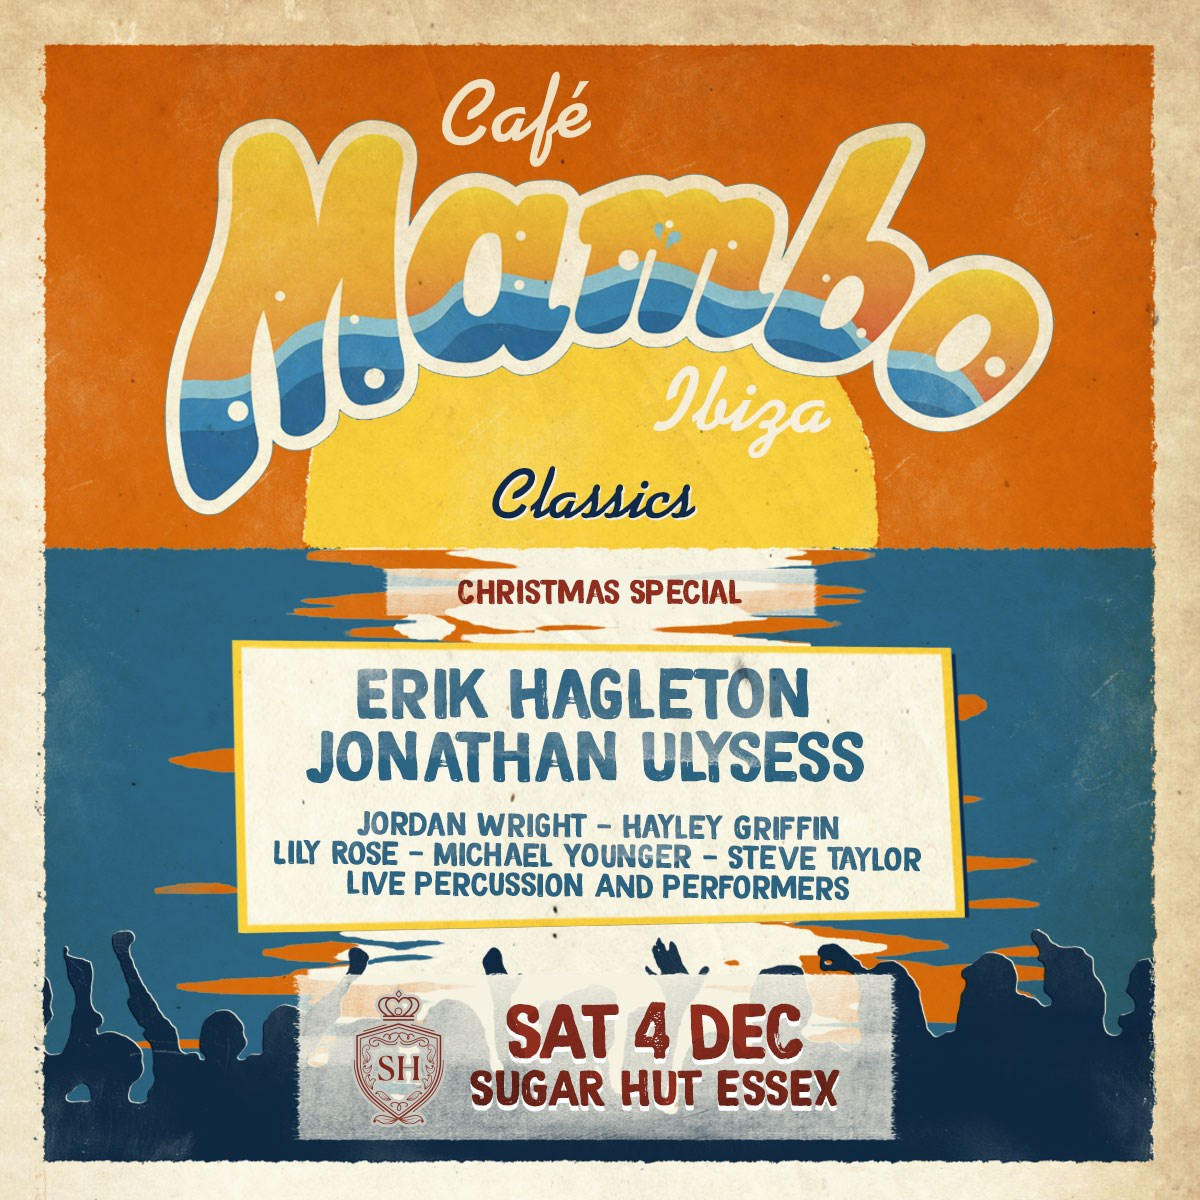 [CANCELLED] Cafe Mambo Ibiza Classics Xmas Party - Flyer front